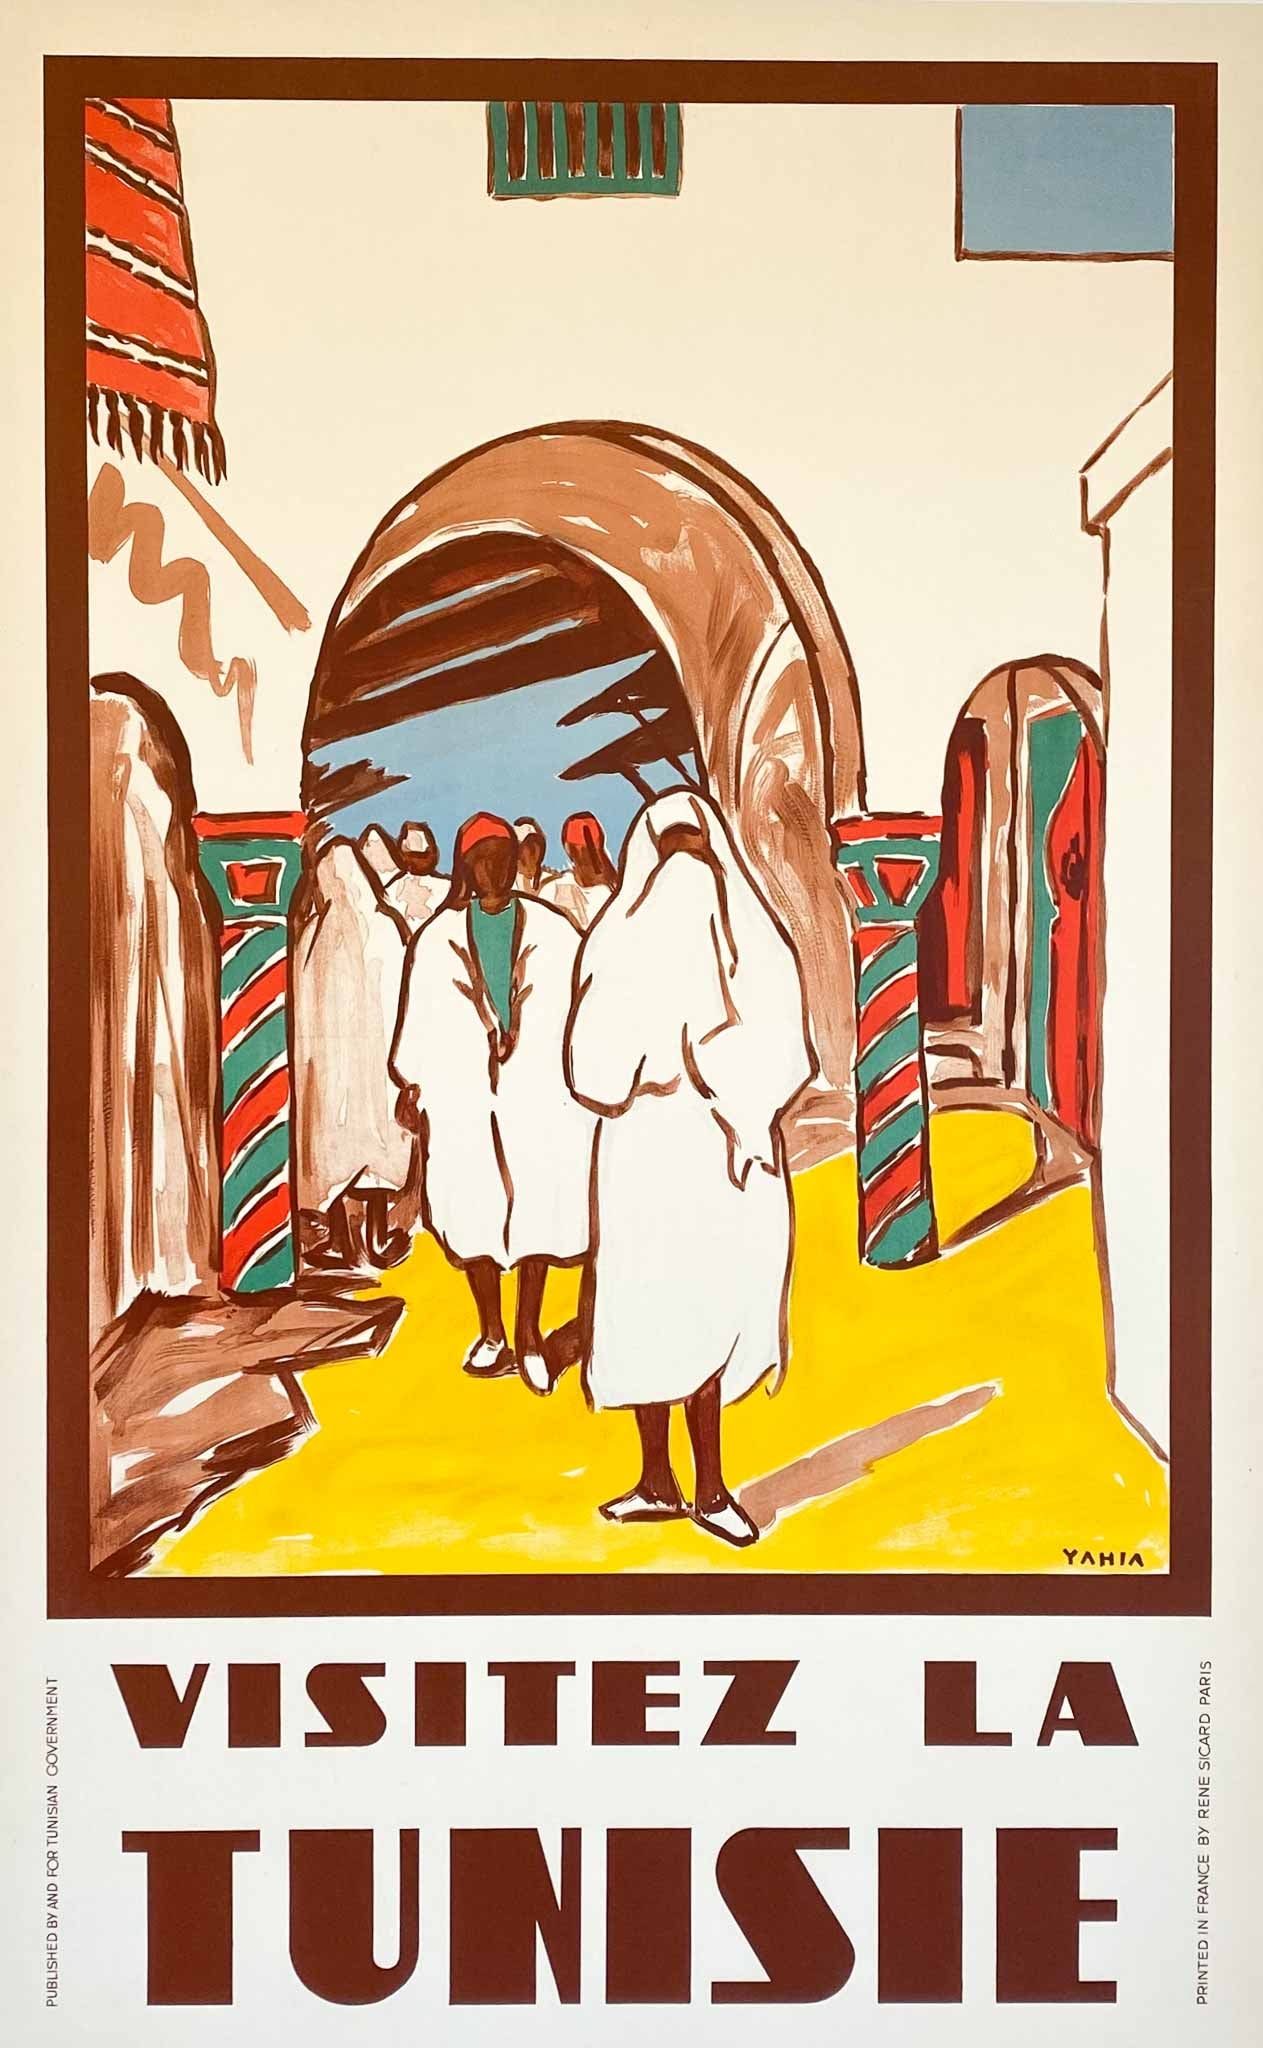 Affiche Lithographique Visitez la Tunisie Par Yahia, 1950       Cette Magnifique Affiche " Visitez la Tunisie " a été créée en 1950 pour promouvoir le tourisme en Tunisie   L'image magnifiquement peinte montre l'étonnante architecture du pays, des allées voûtées aux colonnes décorées de manière extravagante. 